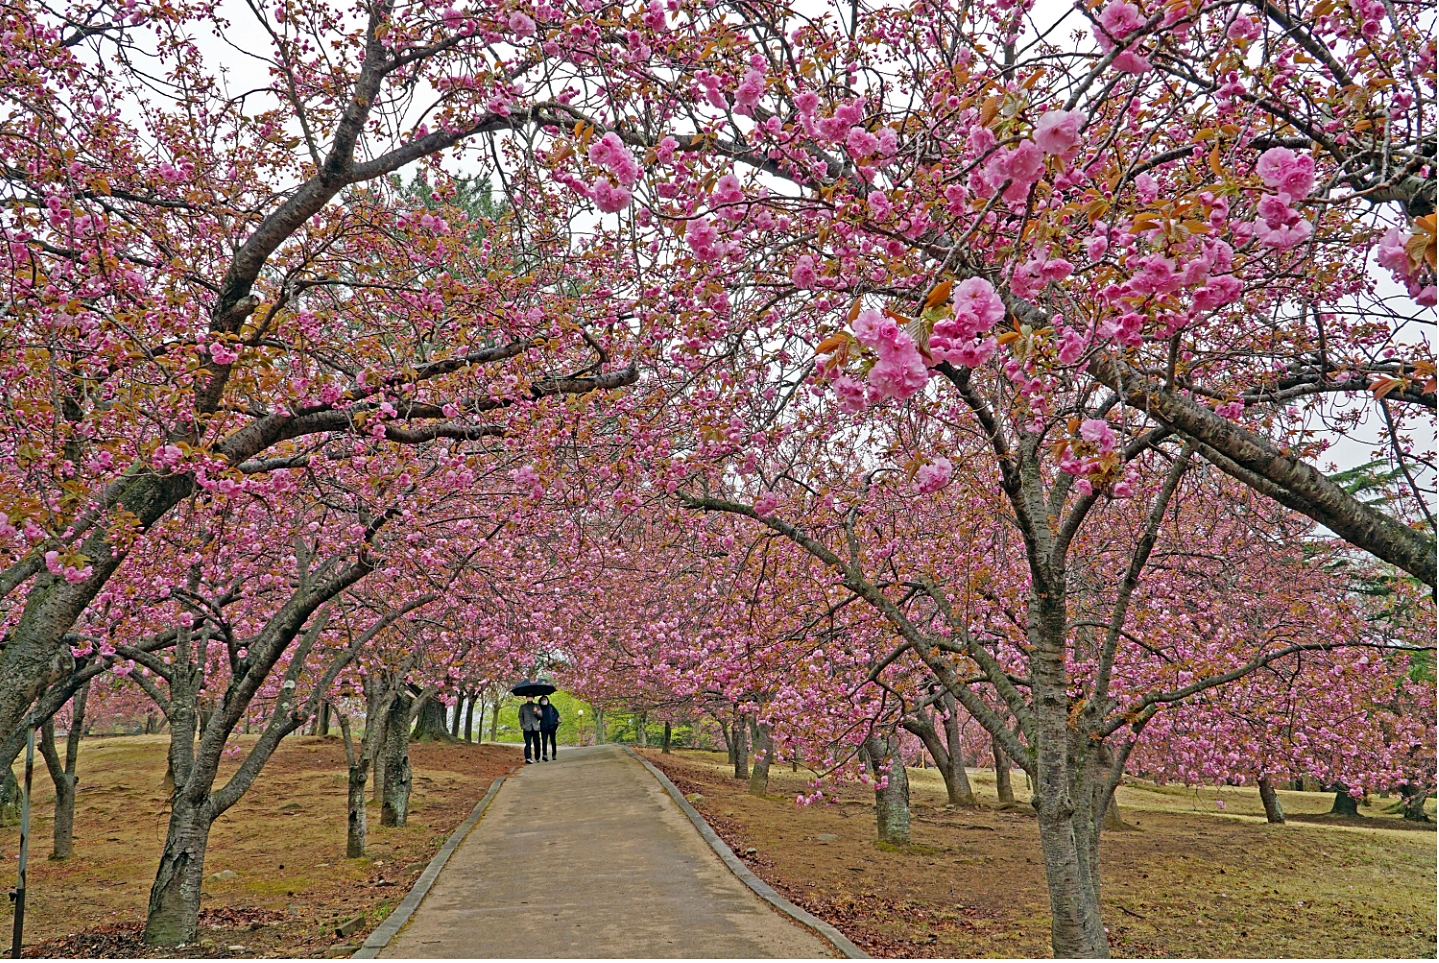 경주 불국공원 겹벚꽃 군락지에 만개가 진행되고 있는 겹벚꽃 모습